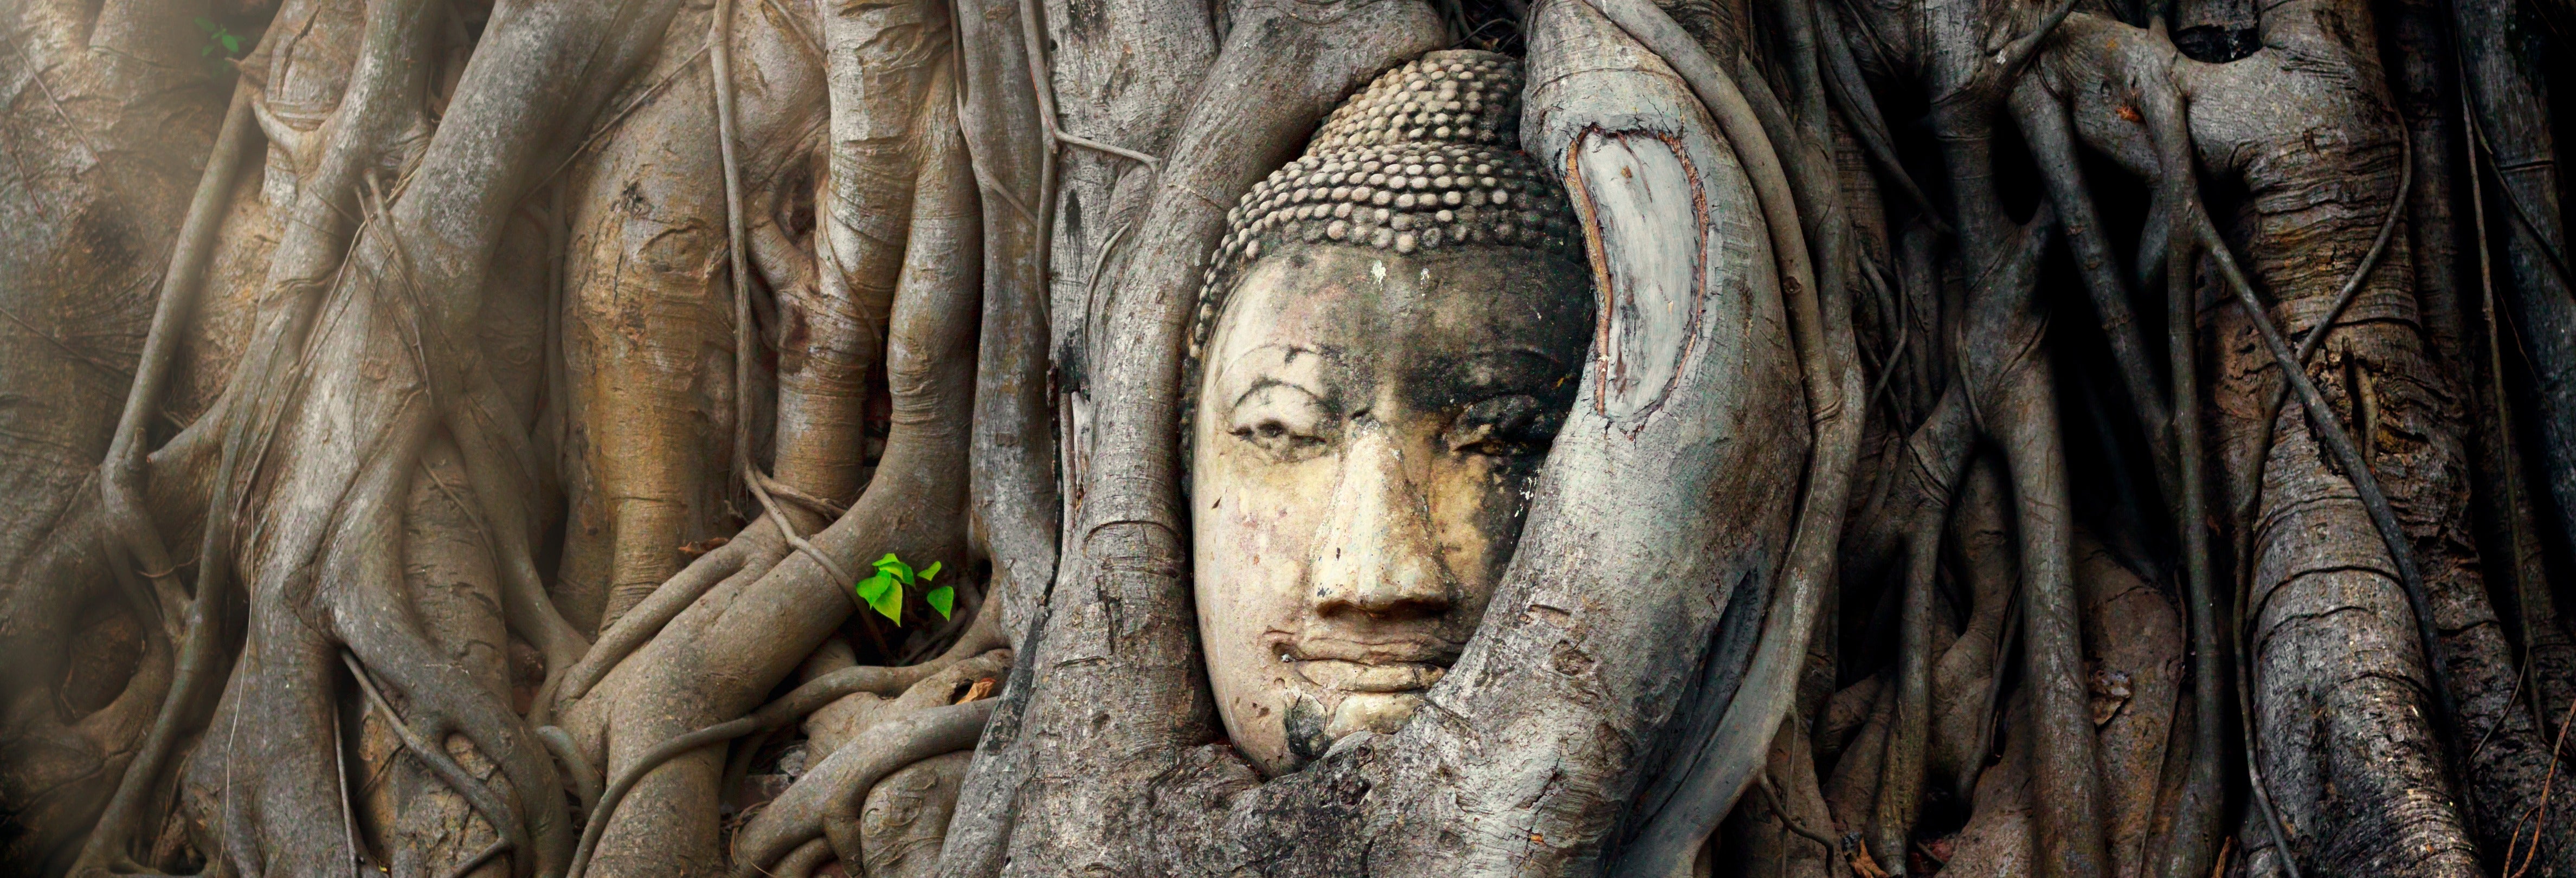 Excursion aux marchés et aux ruines d'Ayutthaya